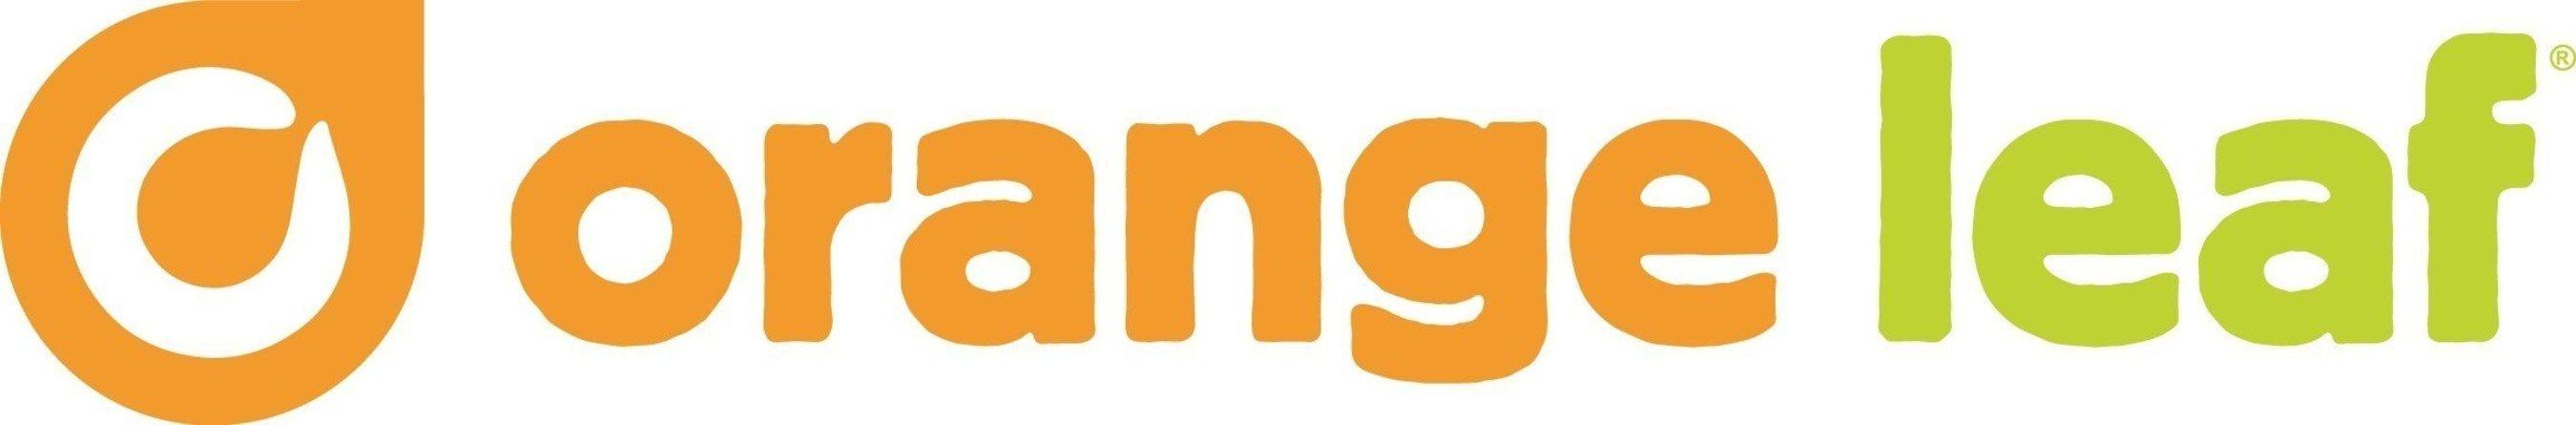 Orange Leaf America Frozen Logo - Orange Leaf Frozen Yogurt Launches 